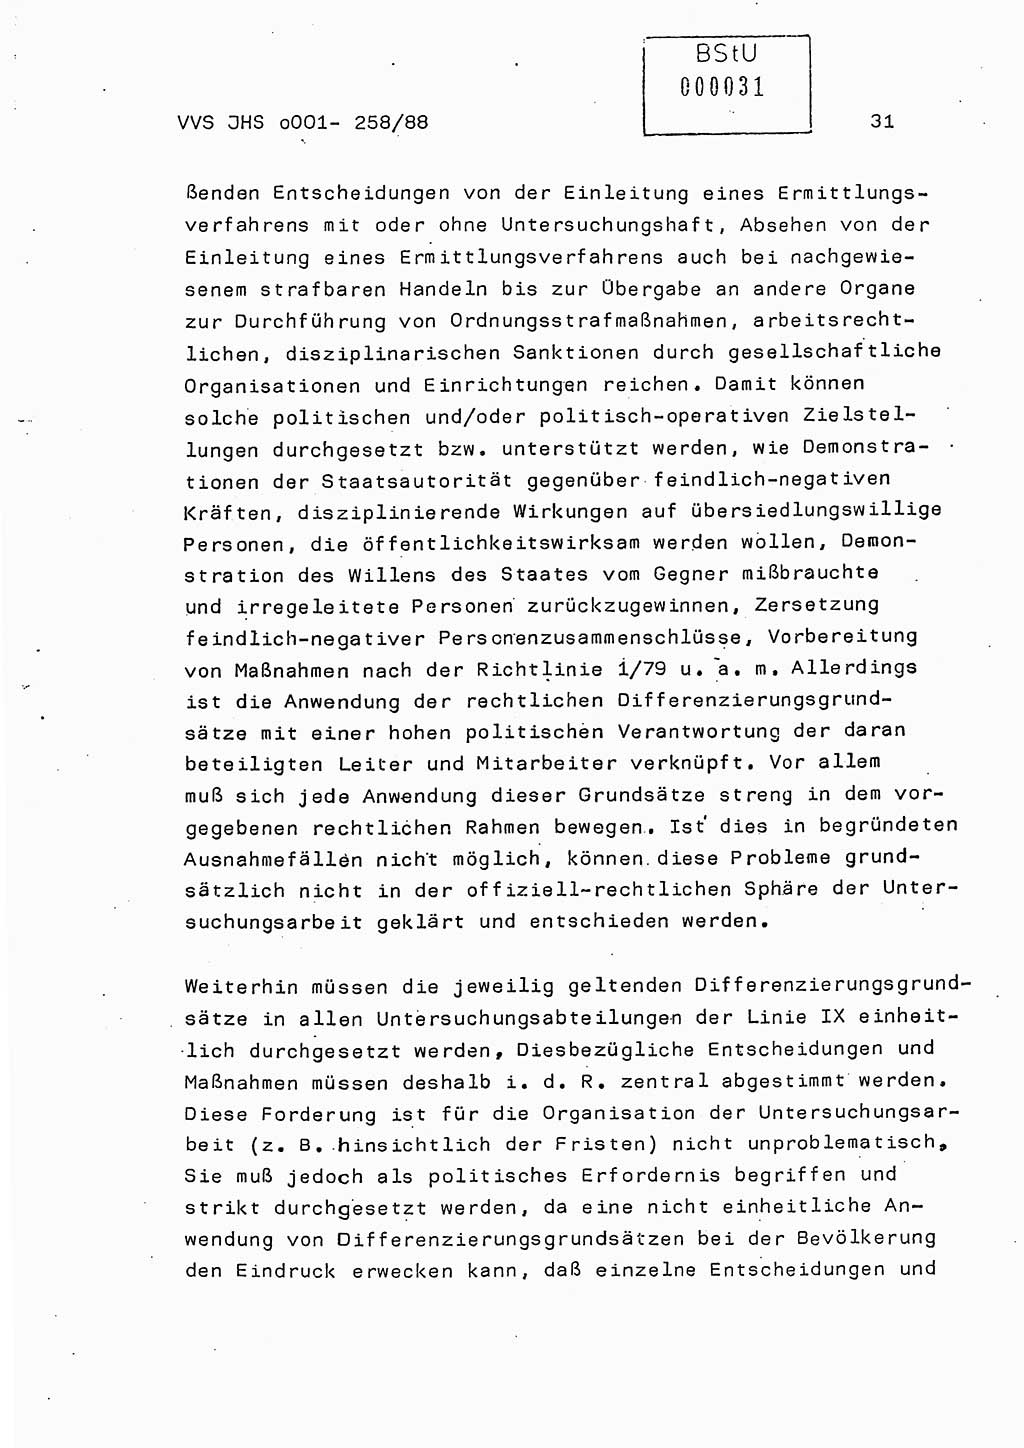 Dissertation, Oberleutnant Uwe Kärsten (JHS), Hauptmann Dr. Joachim Henkel (JHS), Oberstleutnant Werner Mählitz (Leiter der Abt. Ⅸ BV Rostock), Oberstleutnant Jürgen Tröge (HA Ⅸ/AKG), Oberstleutnant Winfried Ziegler (HA Ⅸ/9), Major Wolf-Rüdiger Wurzler (JHS), Ministerium für Staatssicherheit (MfS) [Deutsche Demokratische Republik (DDR)], Juristische Hochschule (JHS), Vertrauliche Verschlußsache (VVS) o001-258/88, Potsdam 1988, Seite 31 (Diss. MfS DDR JHS VVS o001-258/88 1988, S. 31)